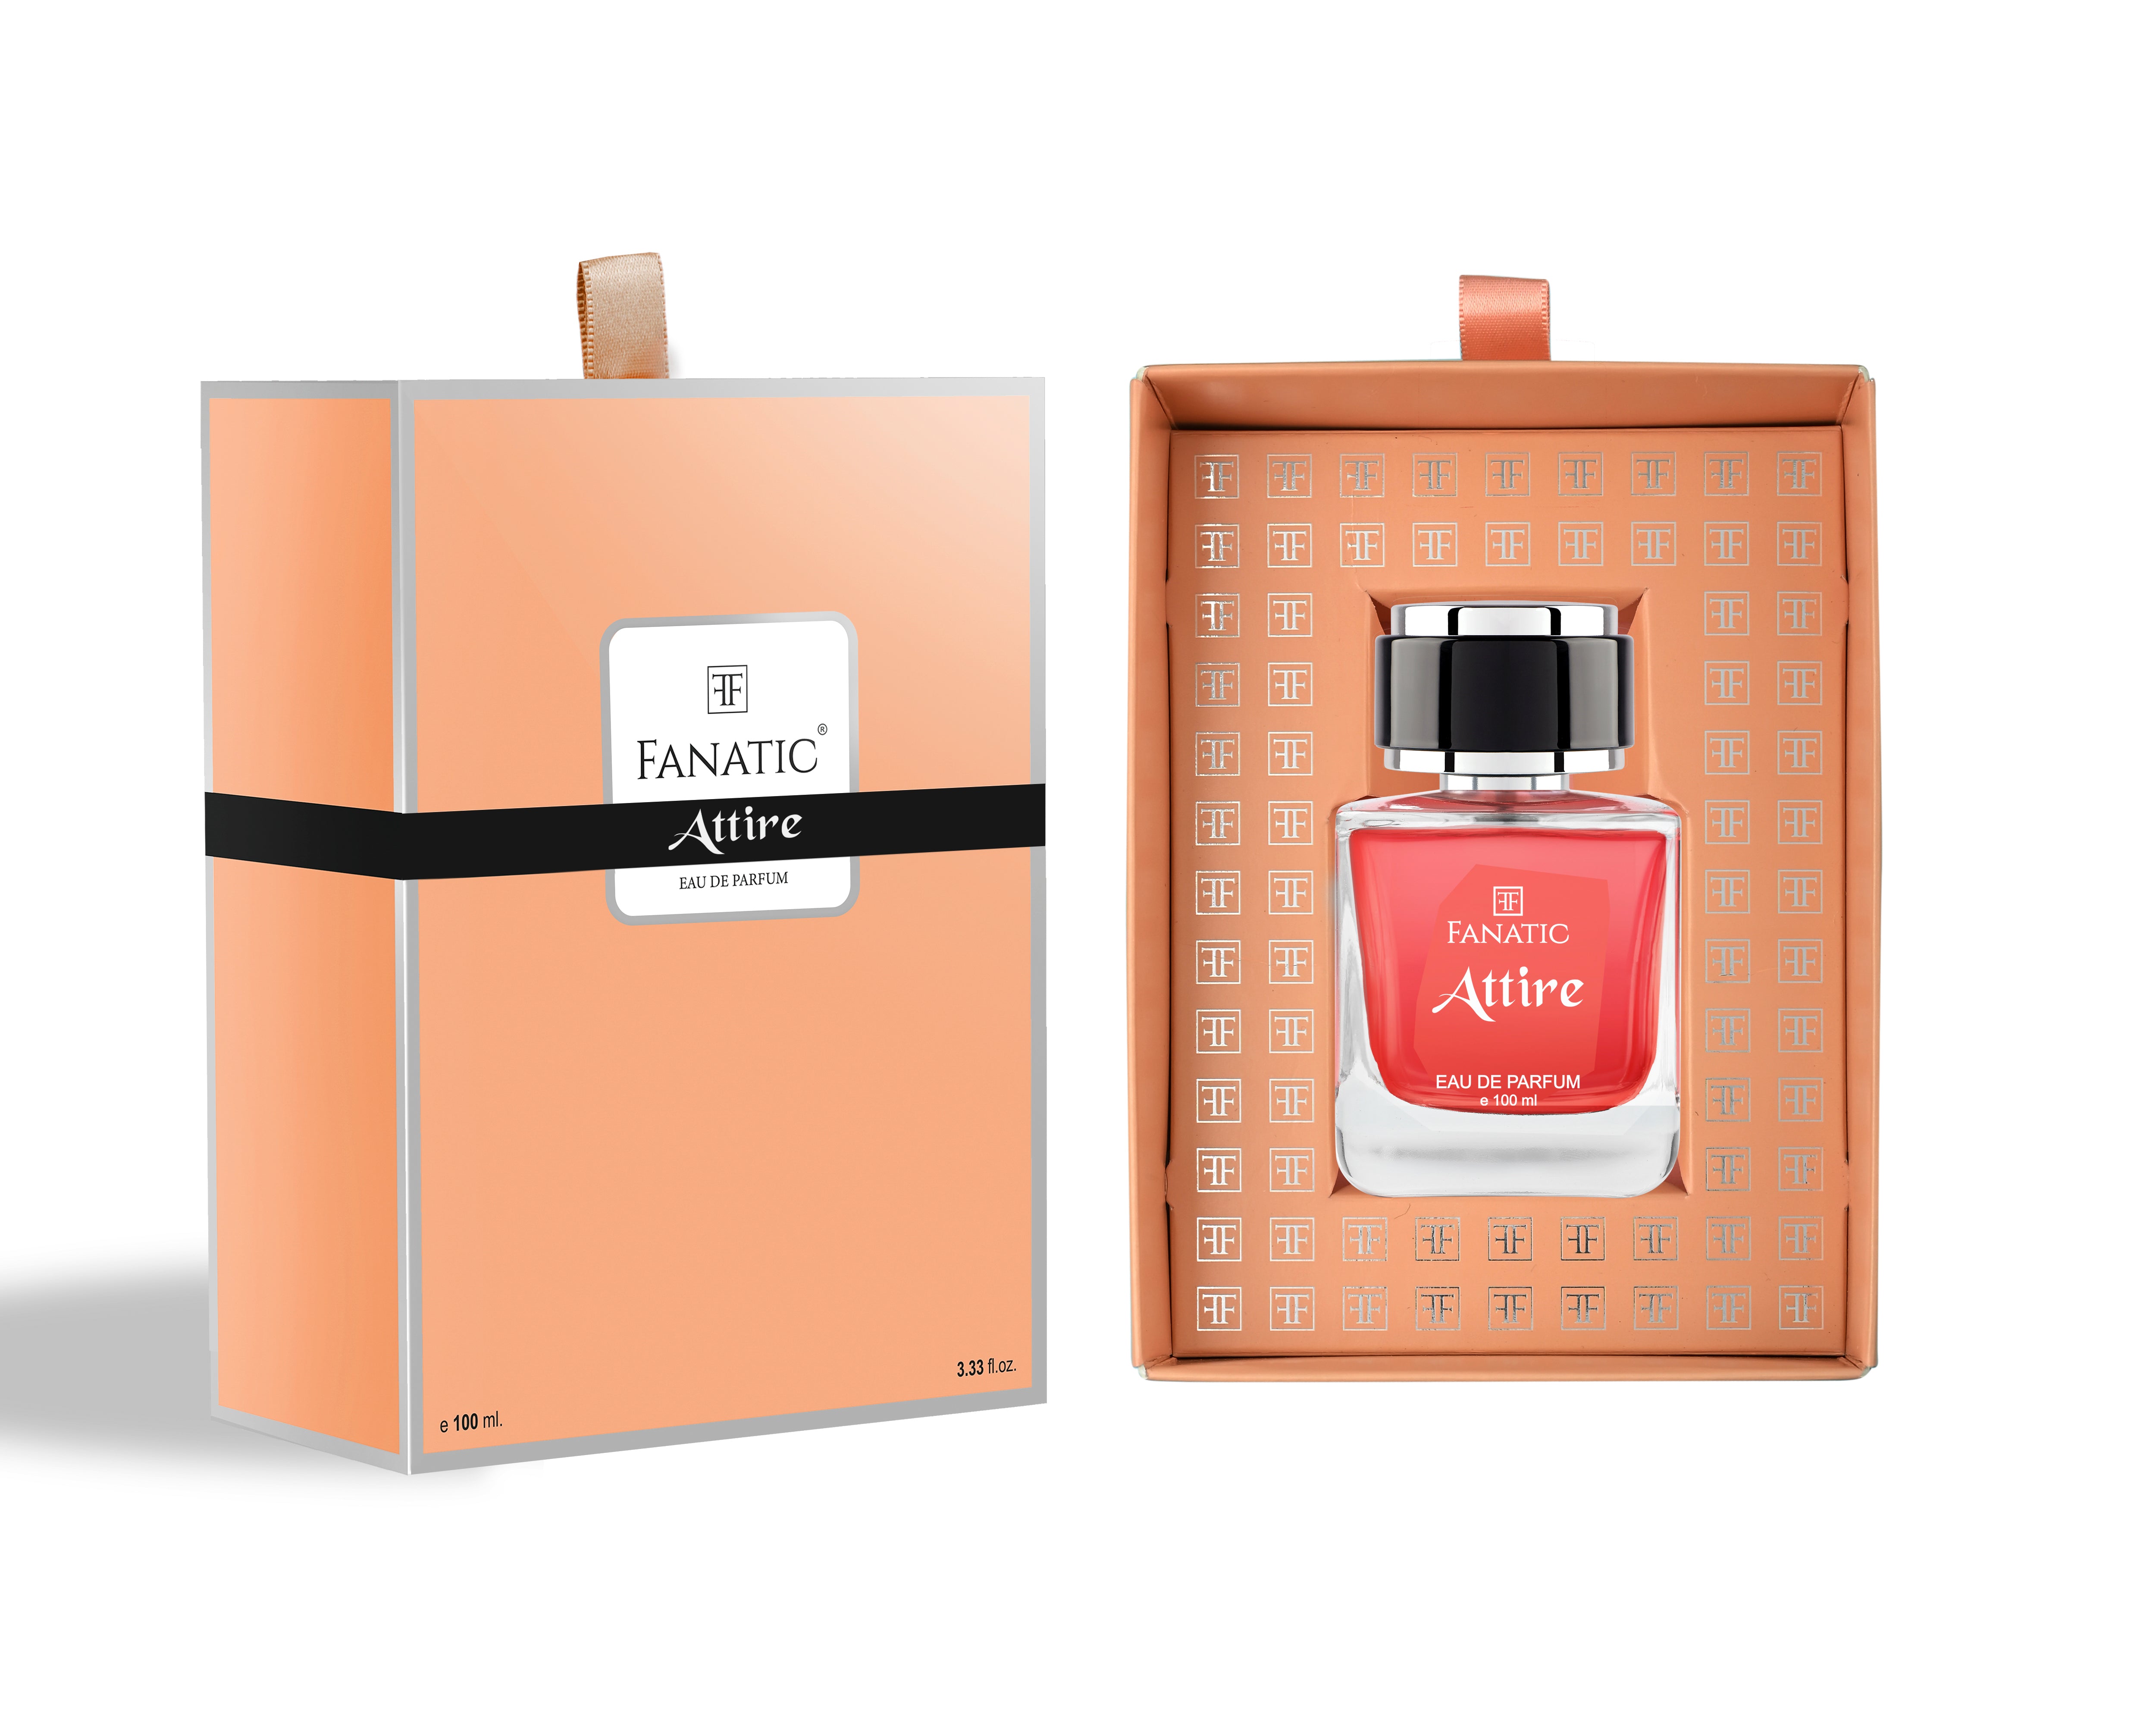 Fanatic Attire Peach Perfume (100 ml)